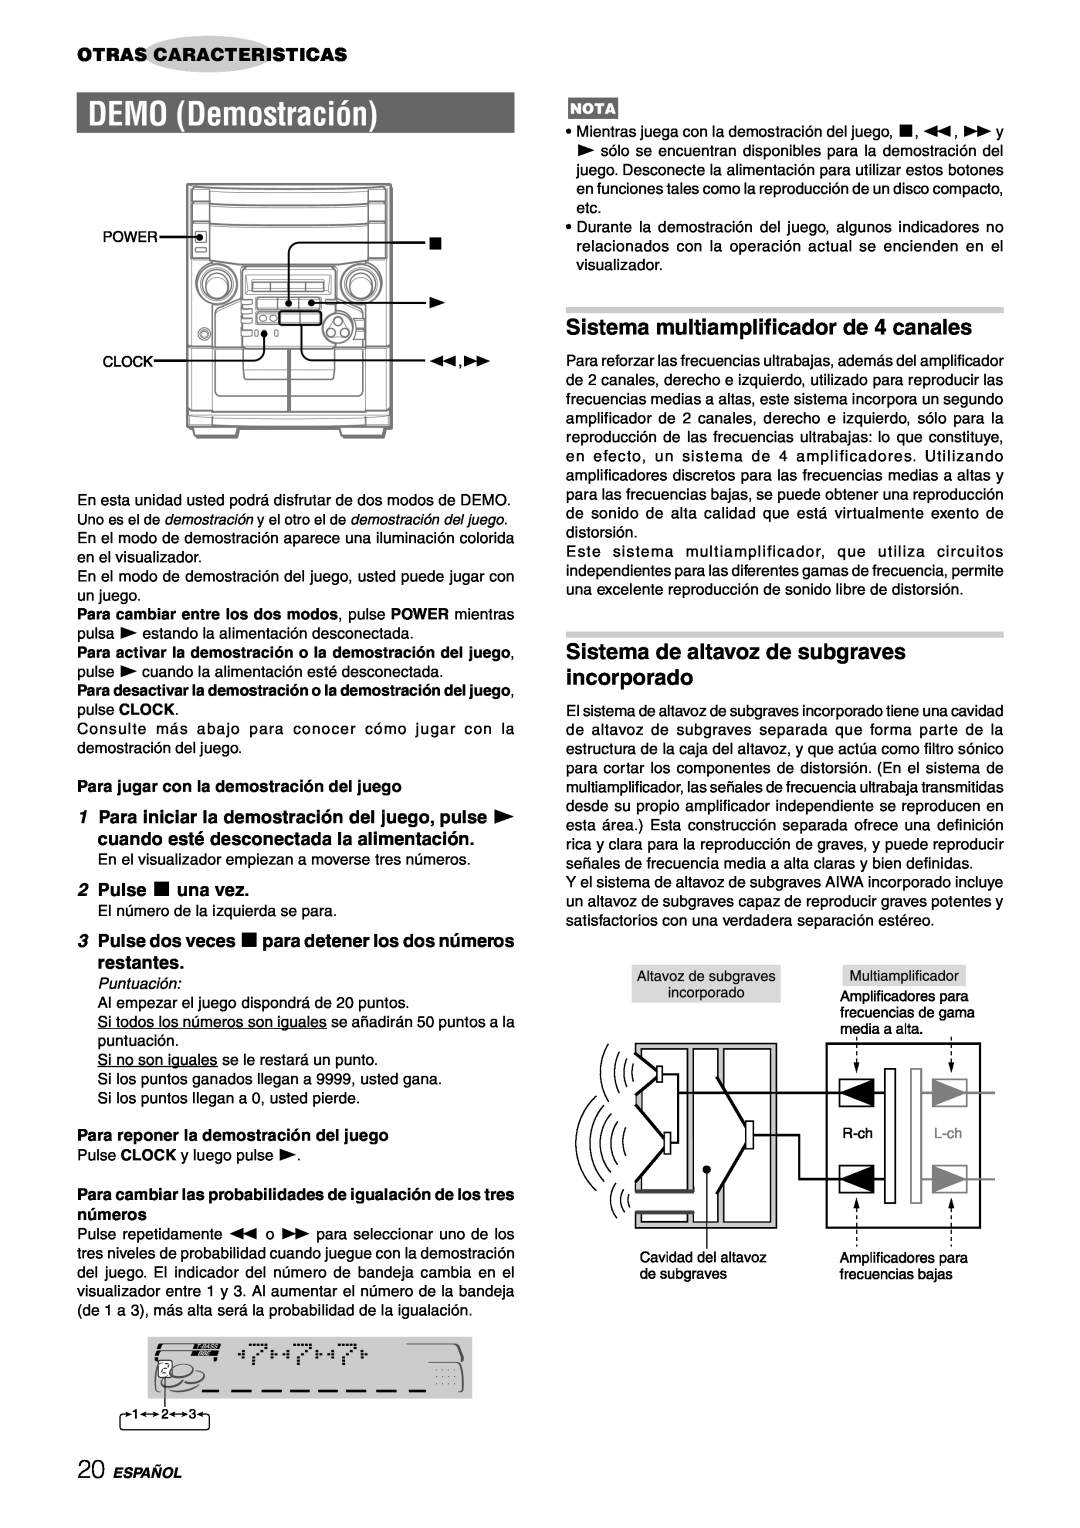 Aiwa CX-NAJ54 manual DEMO Demostración, Sistema multiamplificador de 4 canales, Sistema de altavoz de subgraves incorporado 